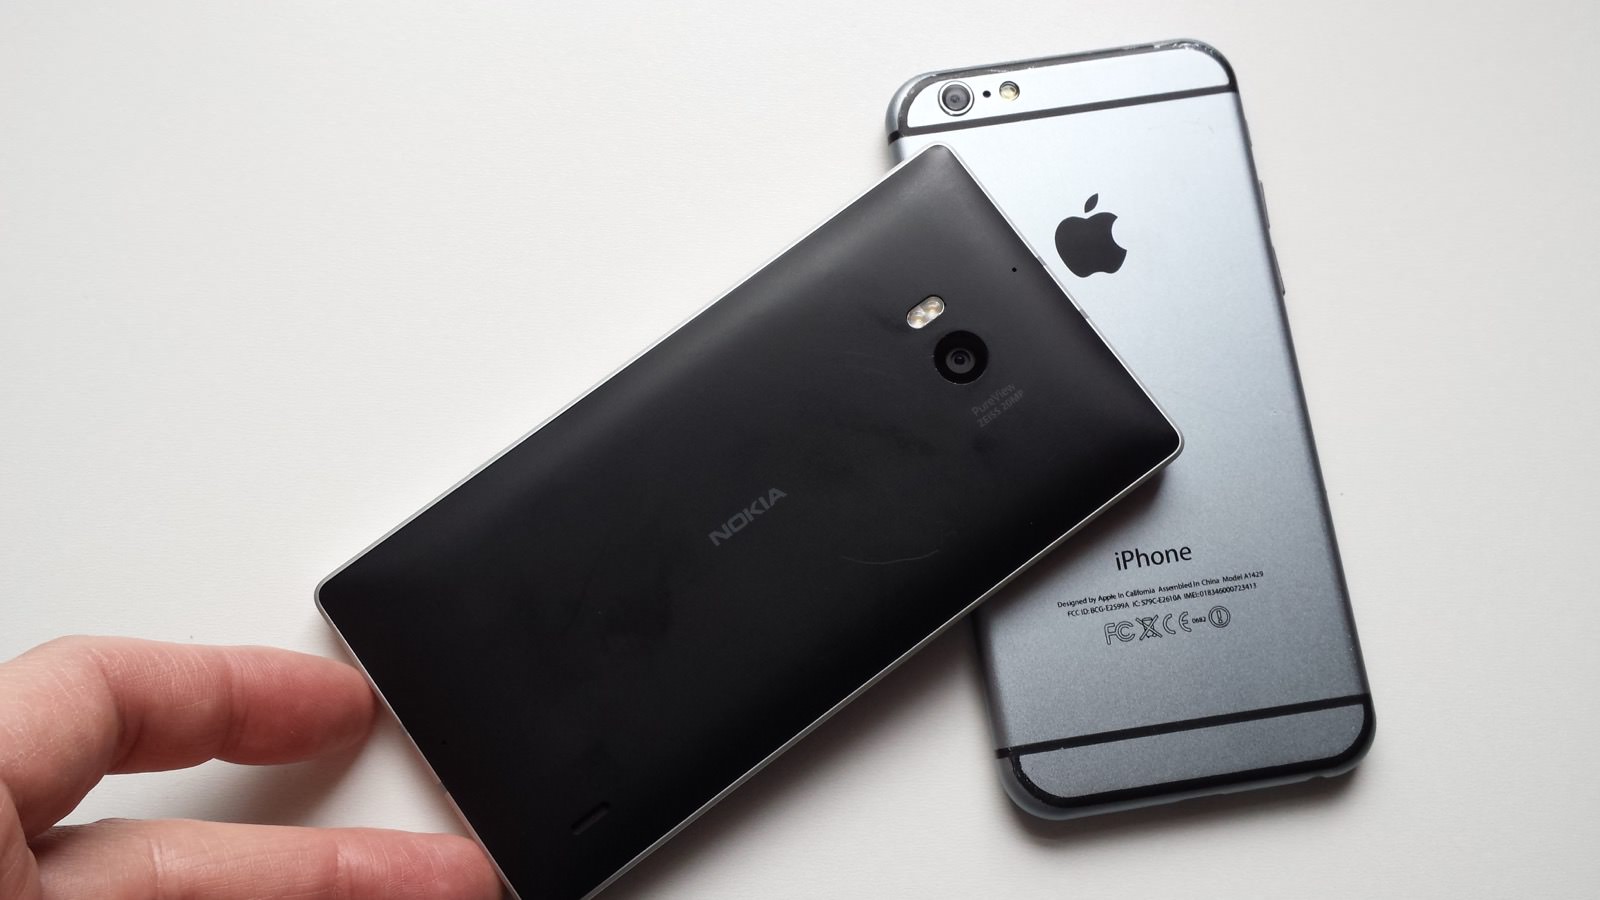 Lumia 930 and iPhone 6